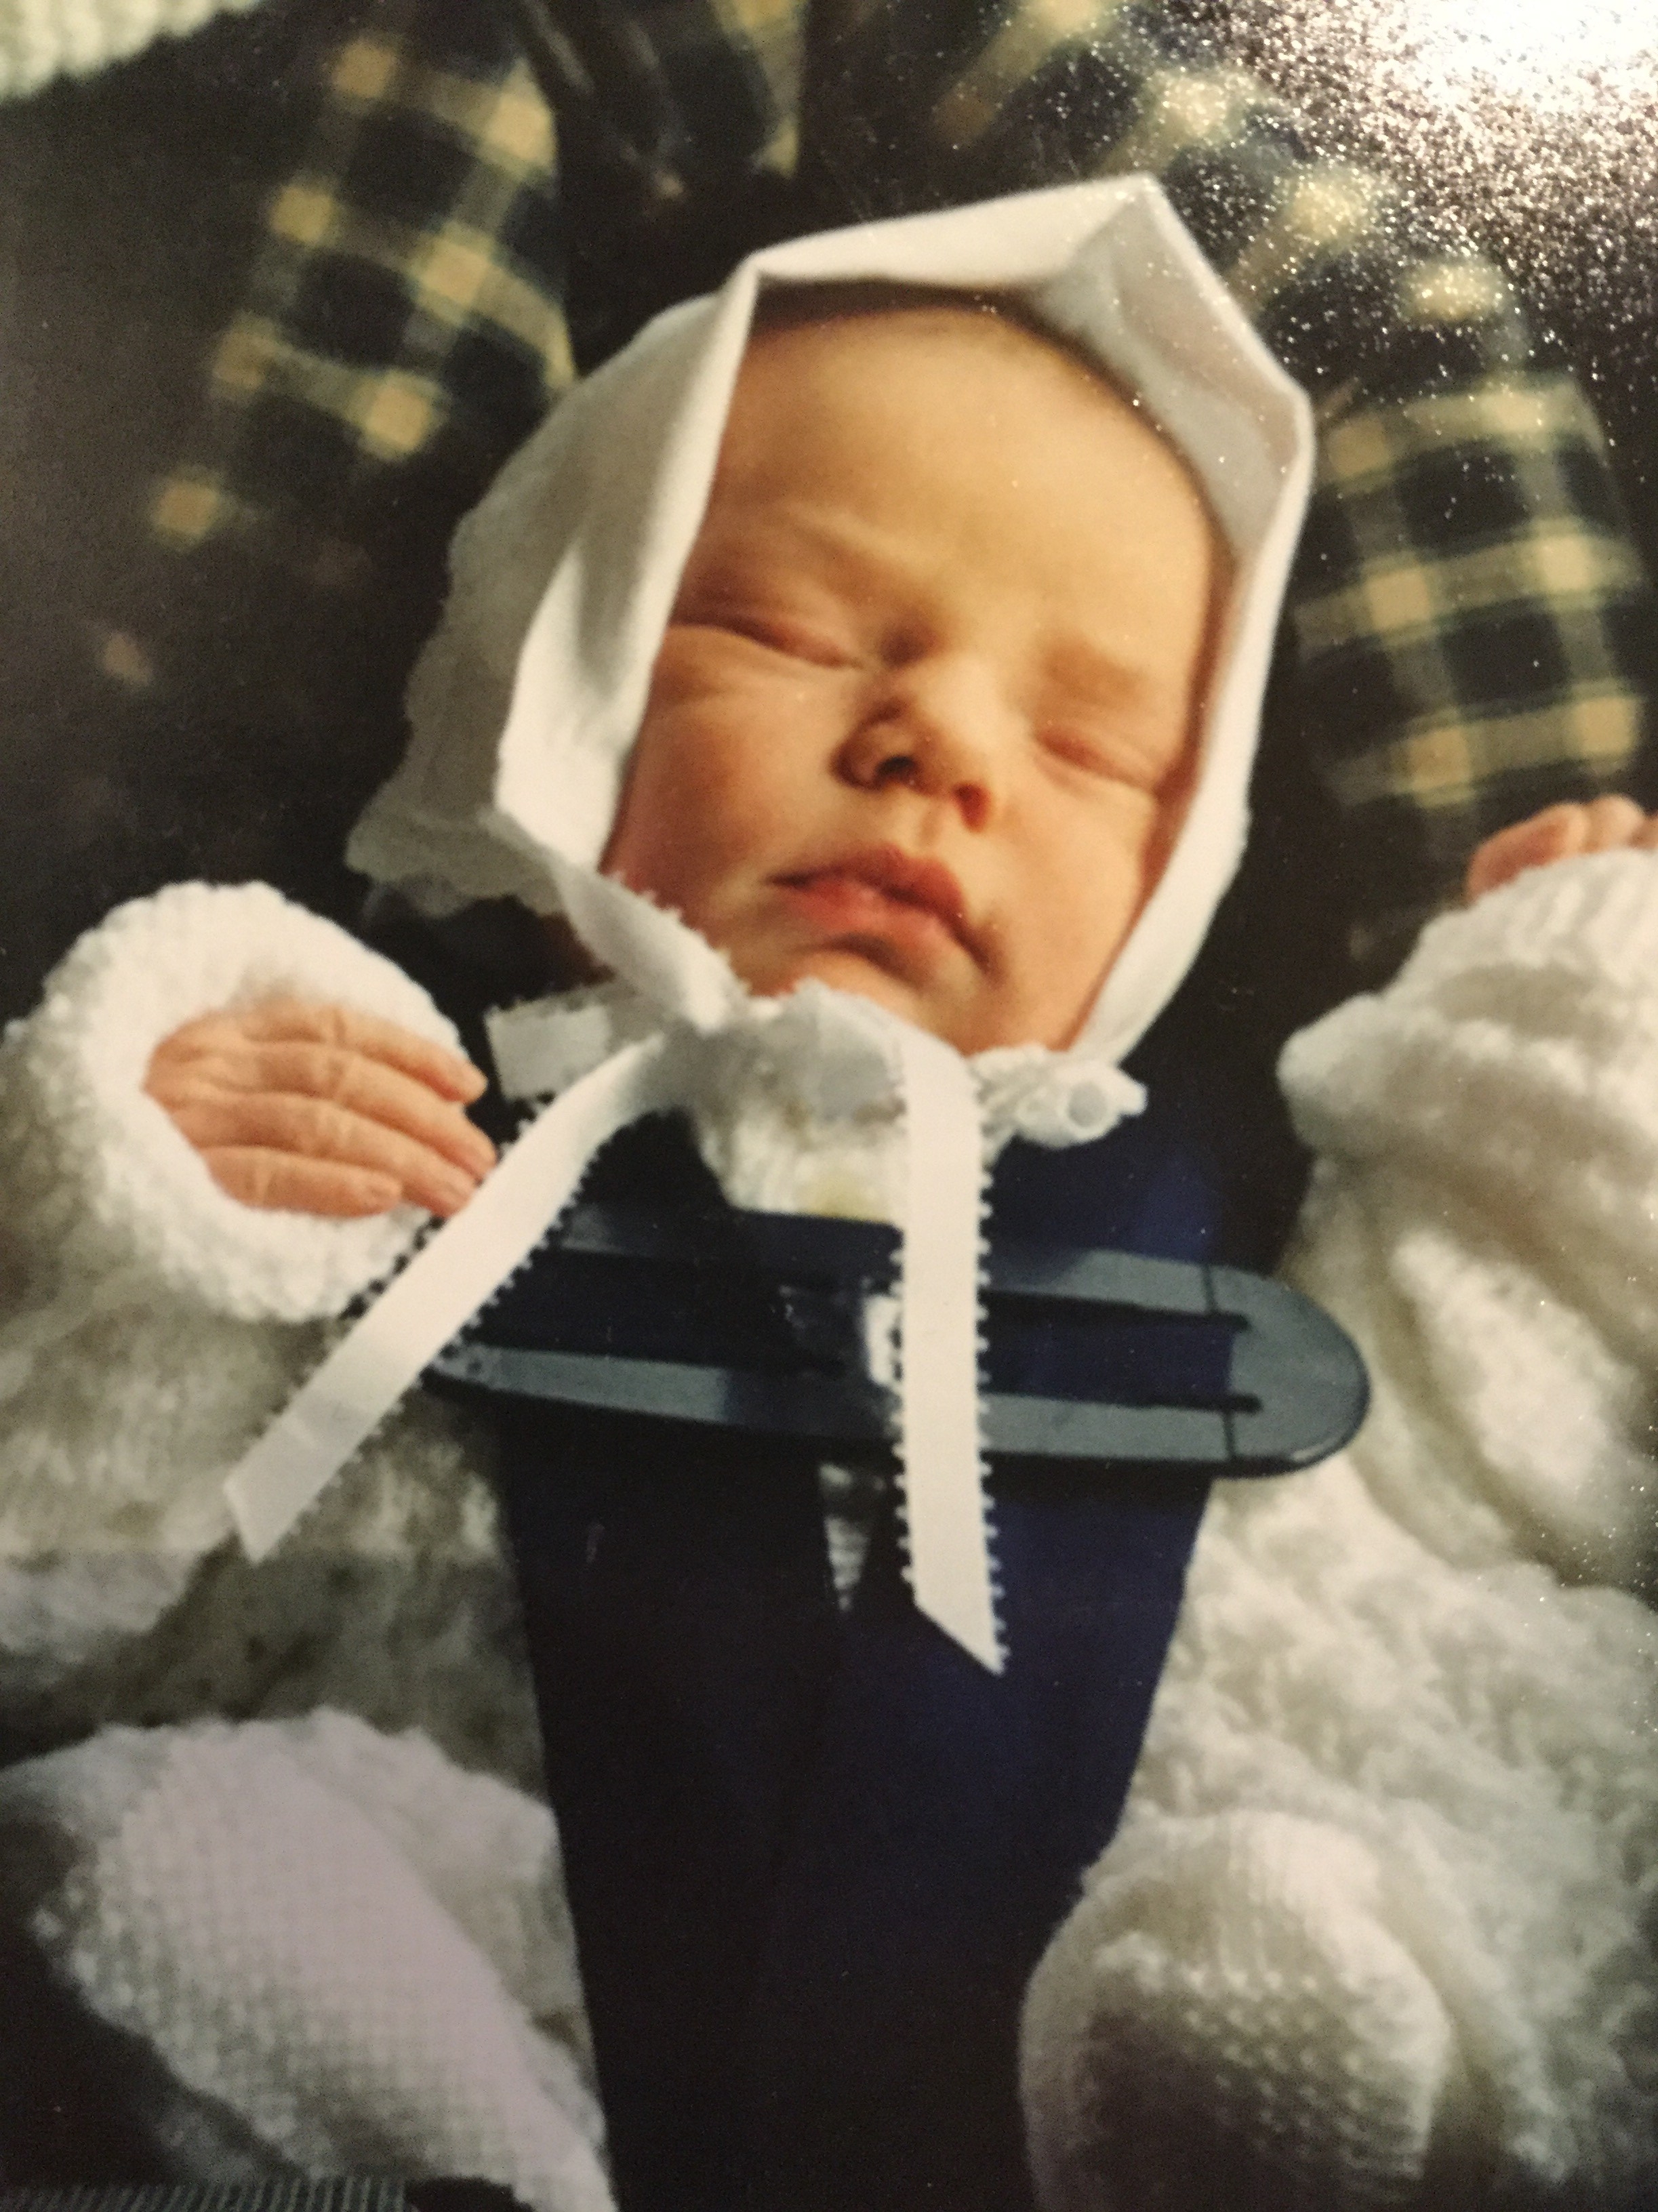 Hannah as a baby